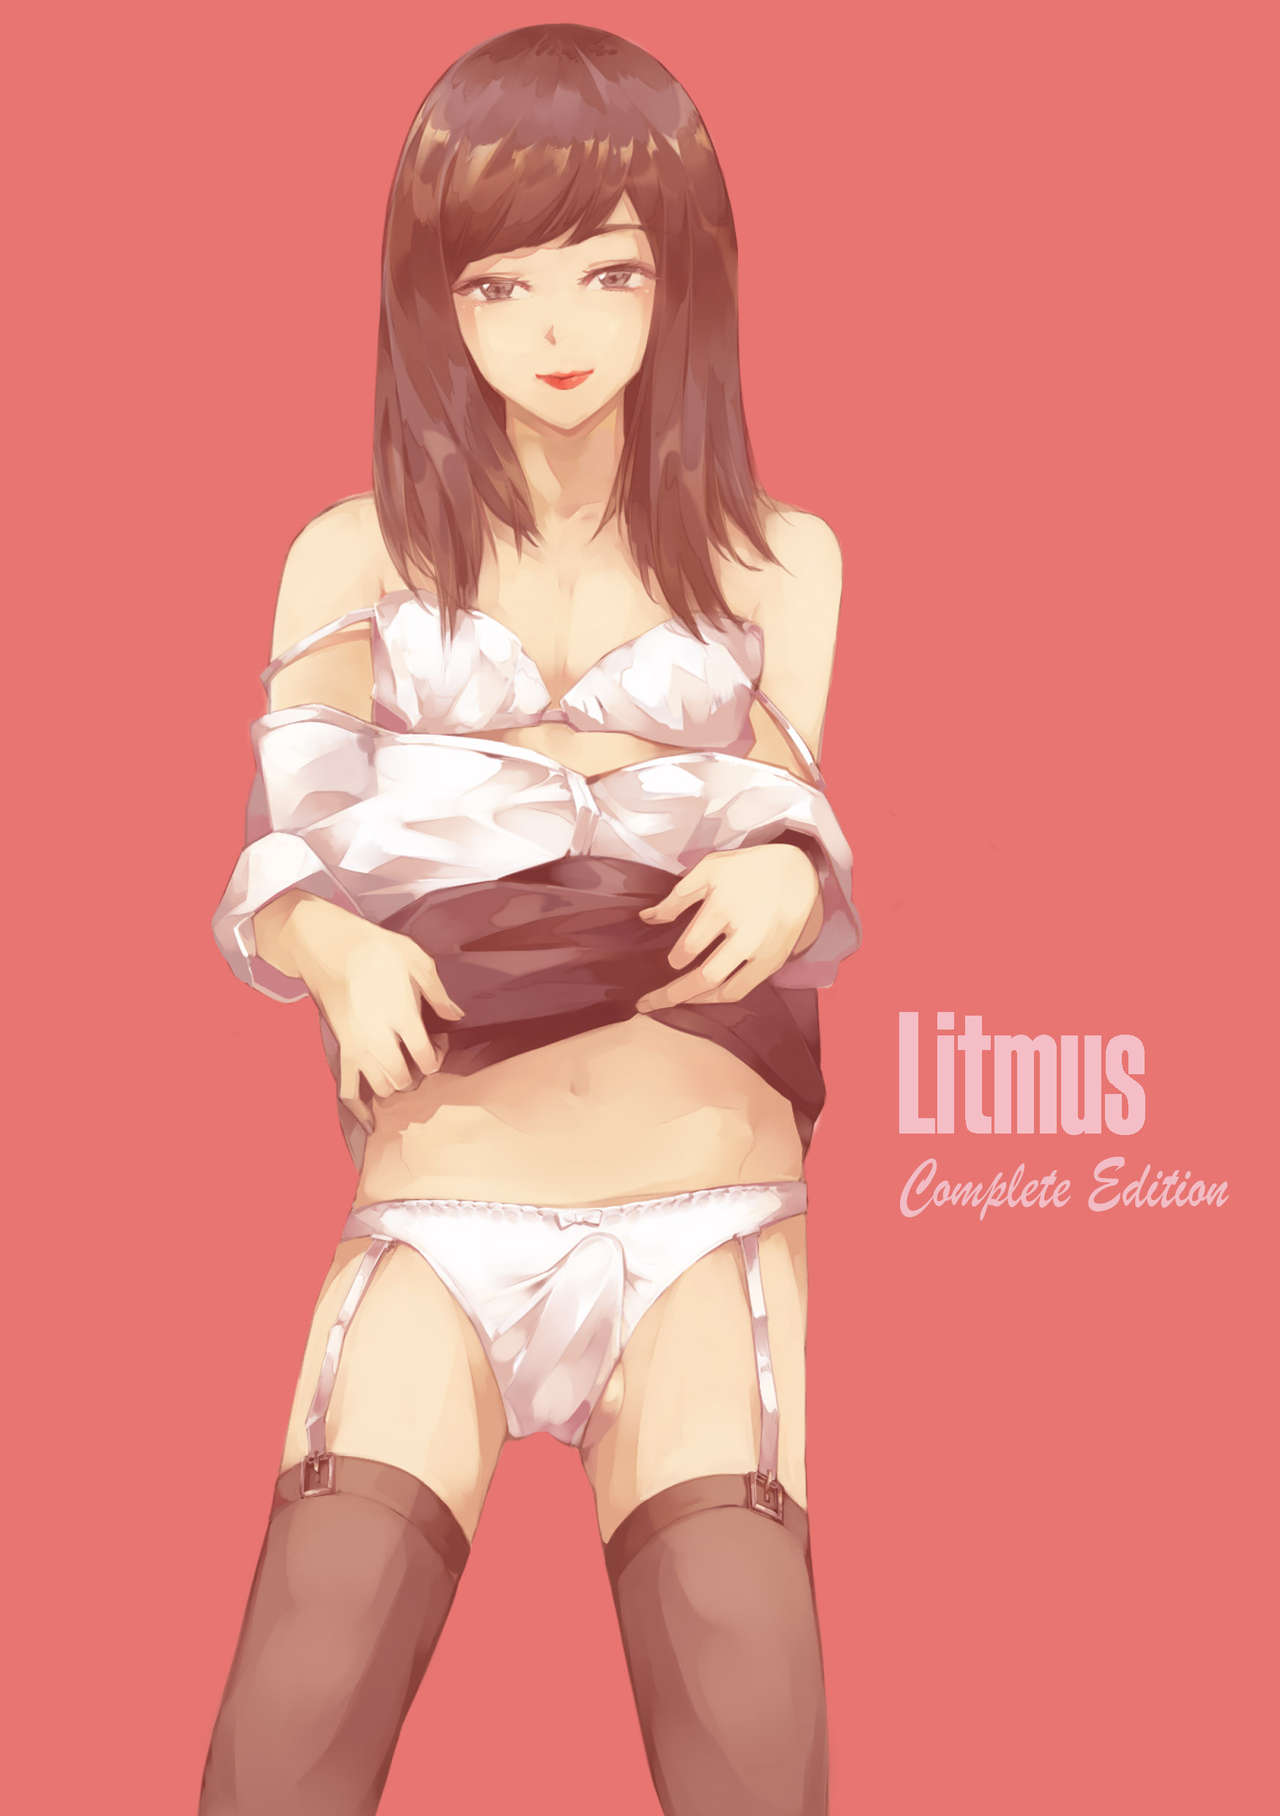 [valdam] Litmus - Complete Edition [English] 